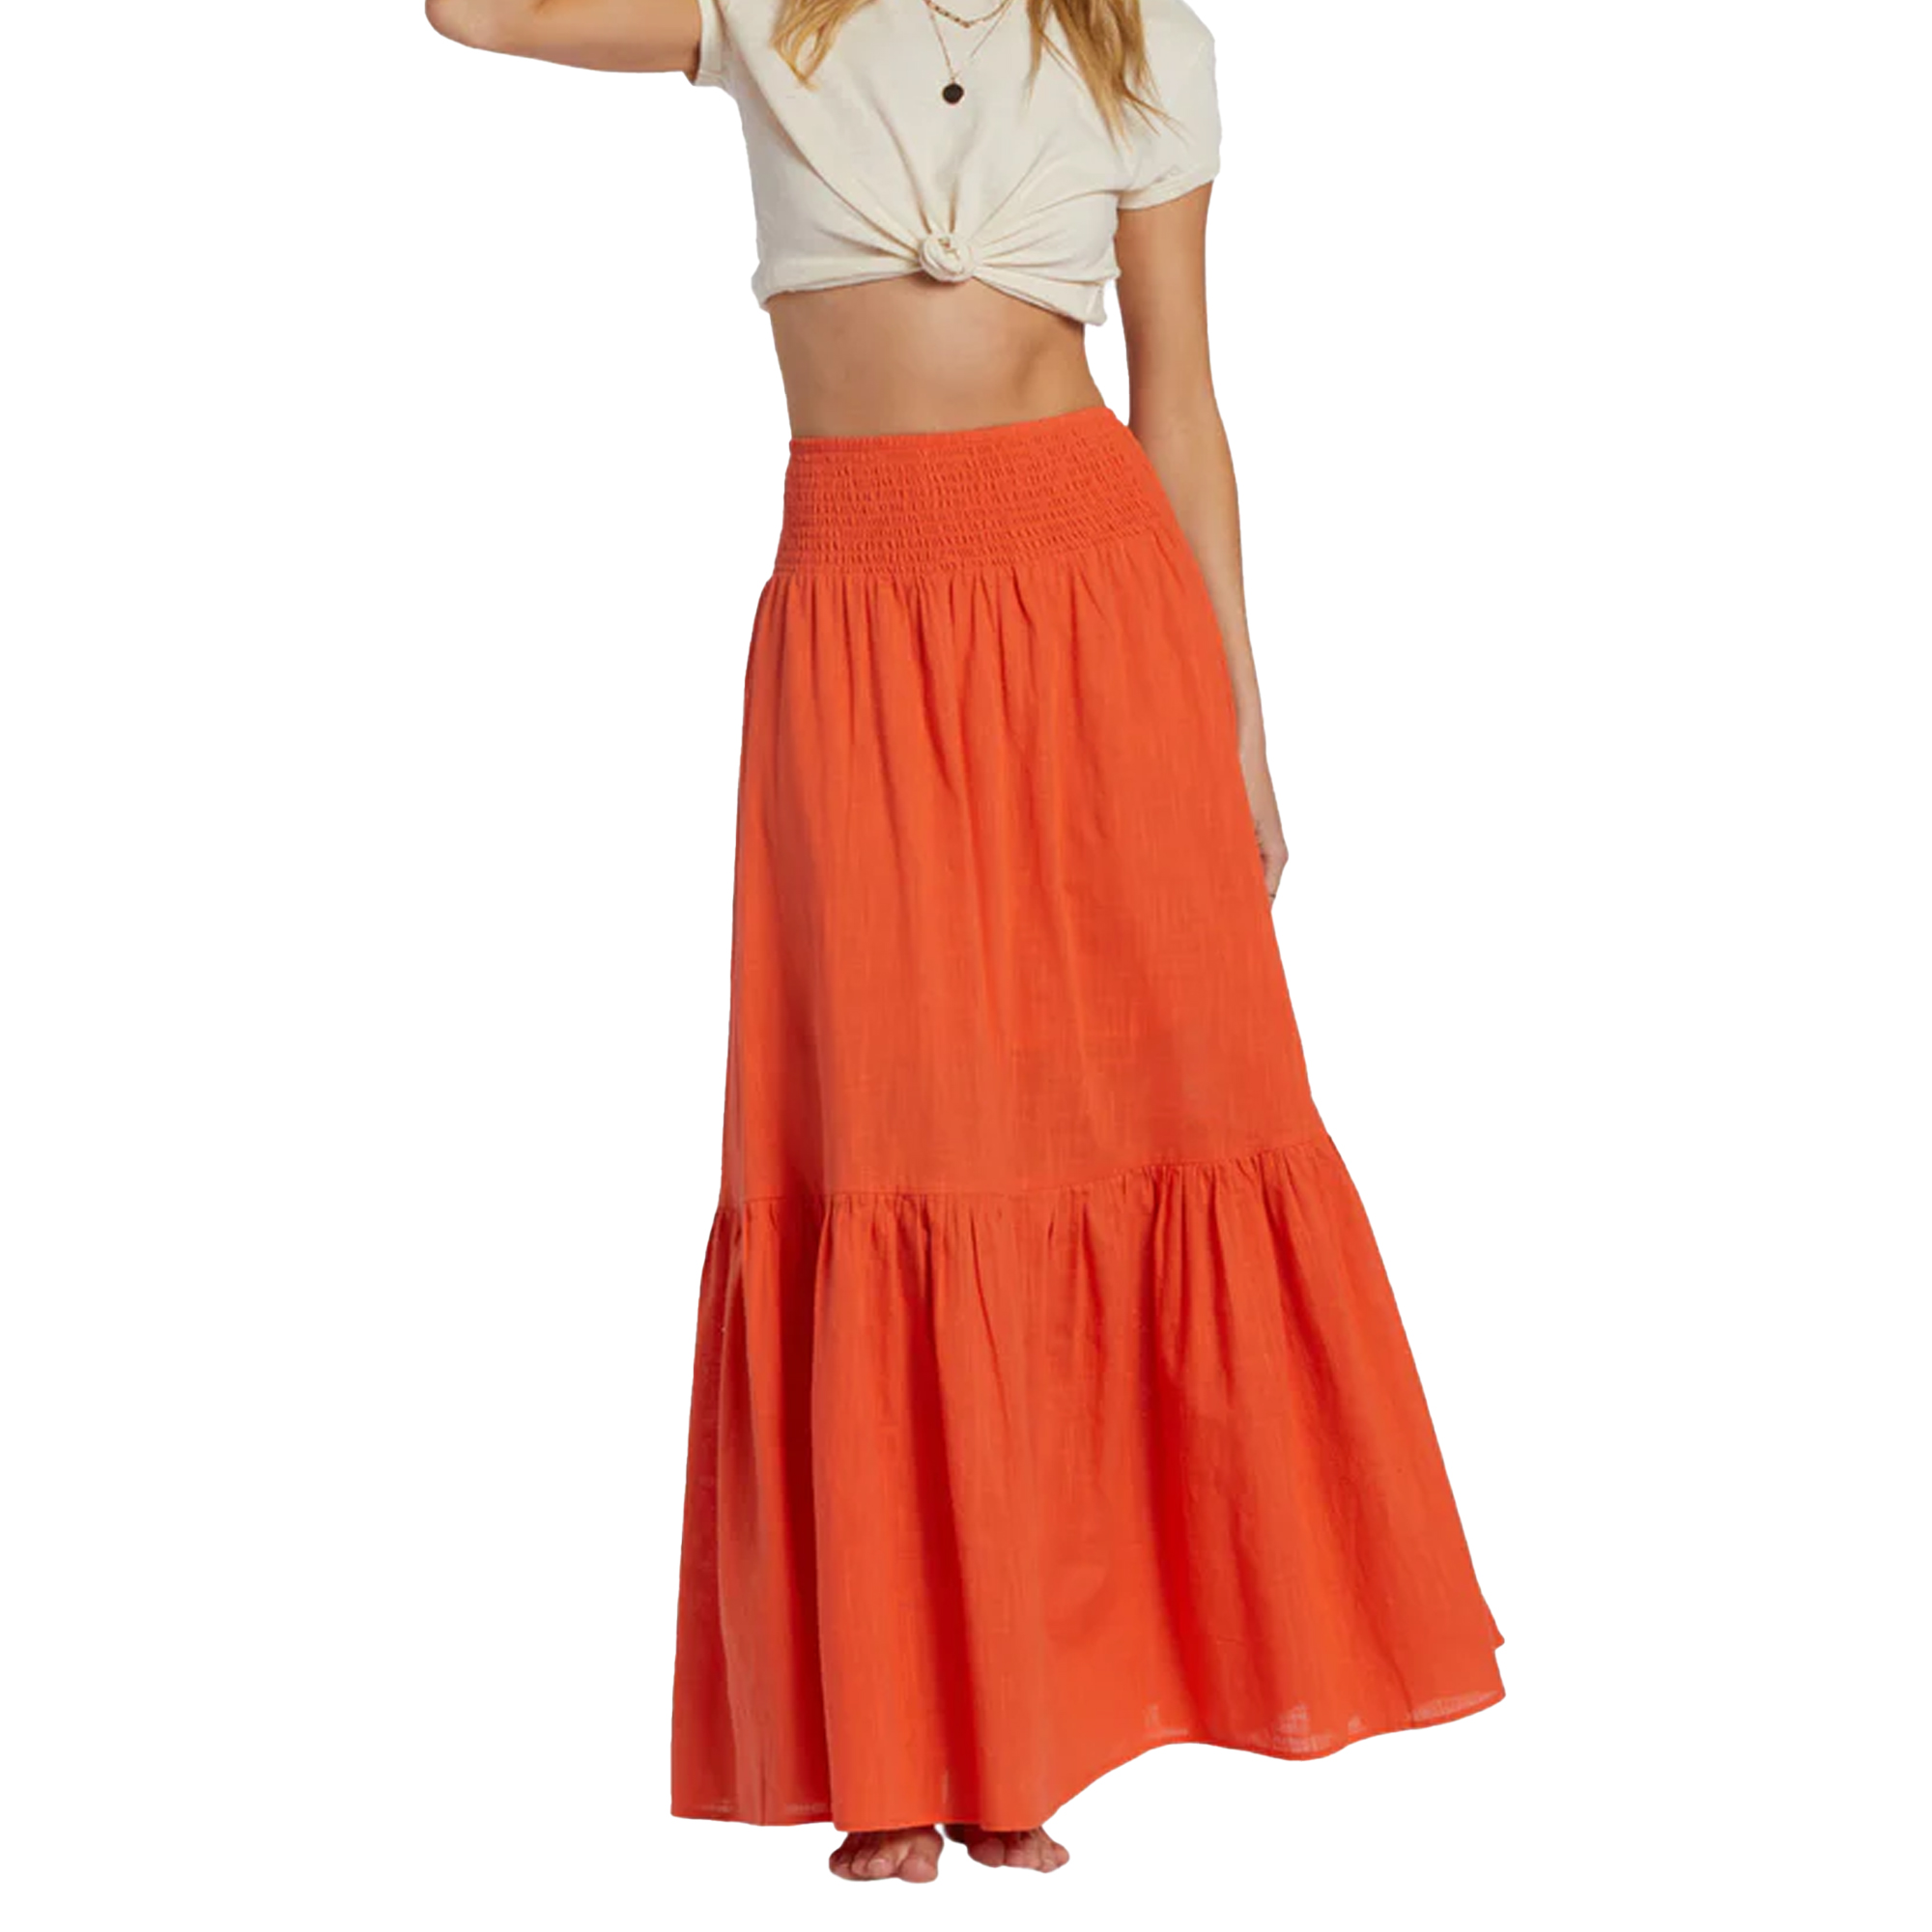 flowy, cute, long, orange skirt